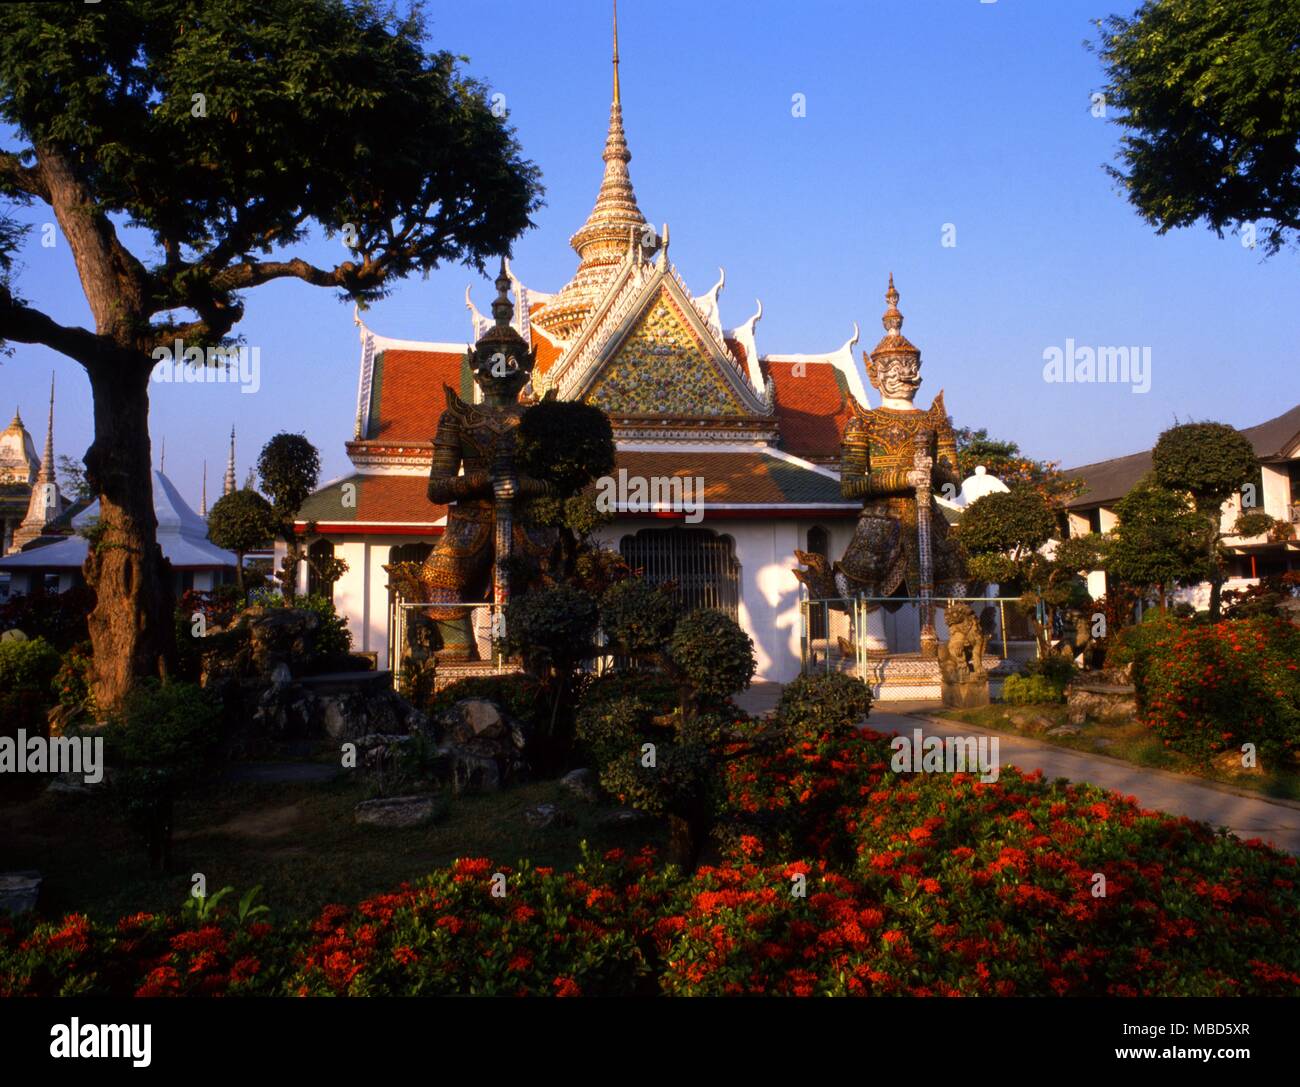 Thailandia - Wat Arun tempio il tempio dell'Alba, è uno dei più noti punti di riferimento e uno dei più pubblicato immagini di Bangkok Foto Stock